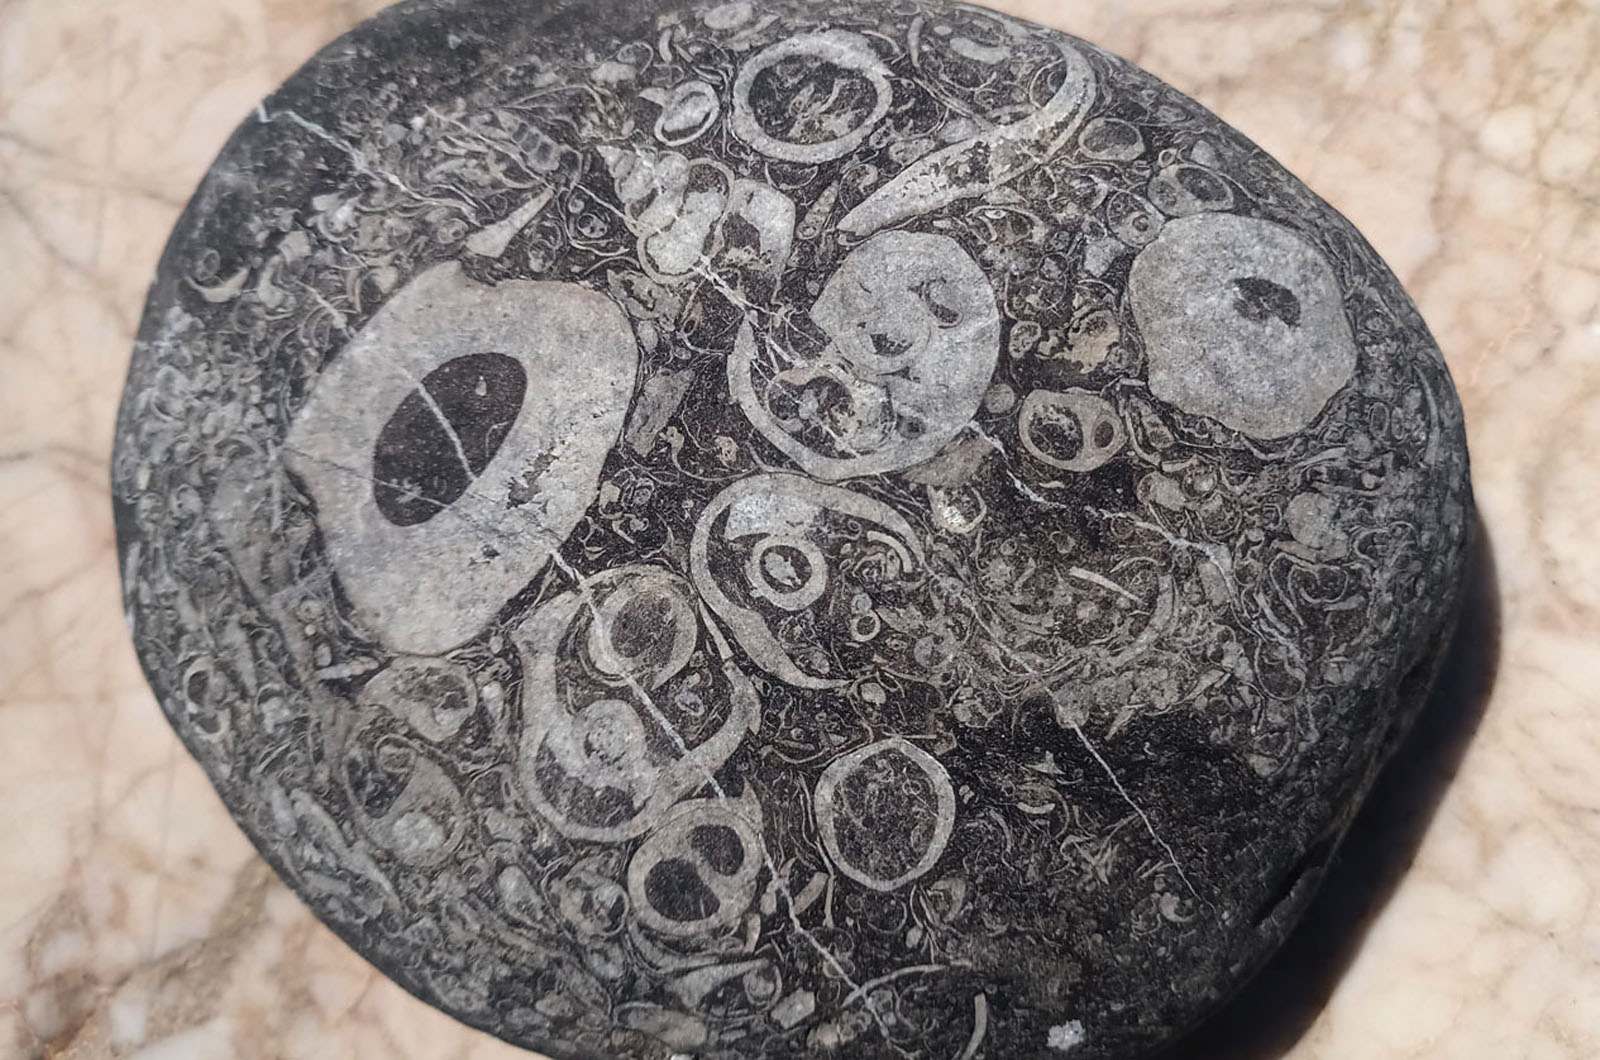 Камни с отпечатками древних существ с турецкого пляжа